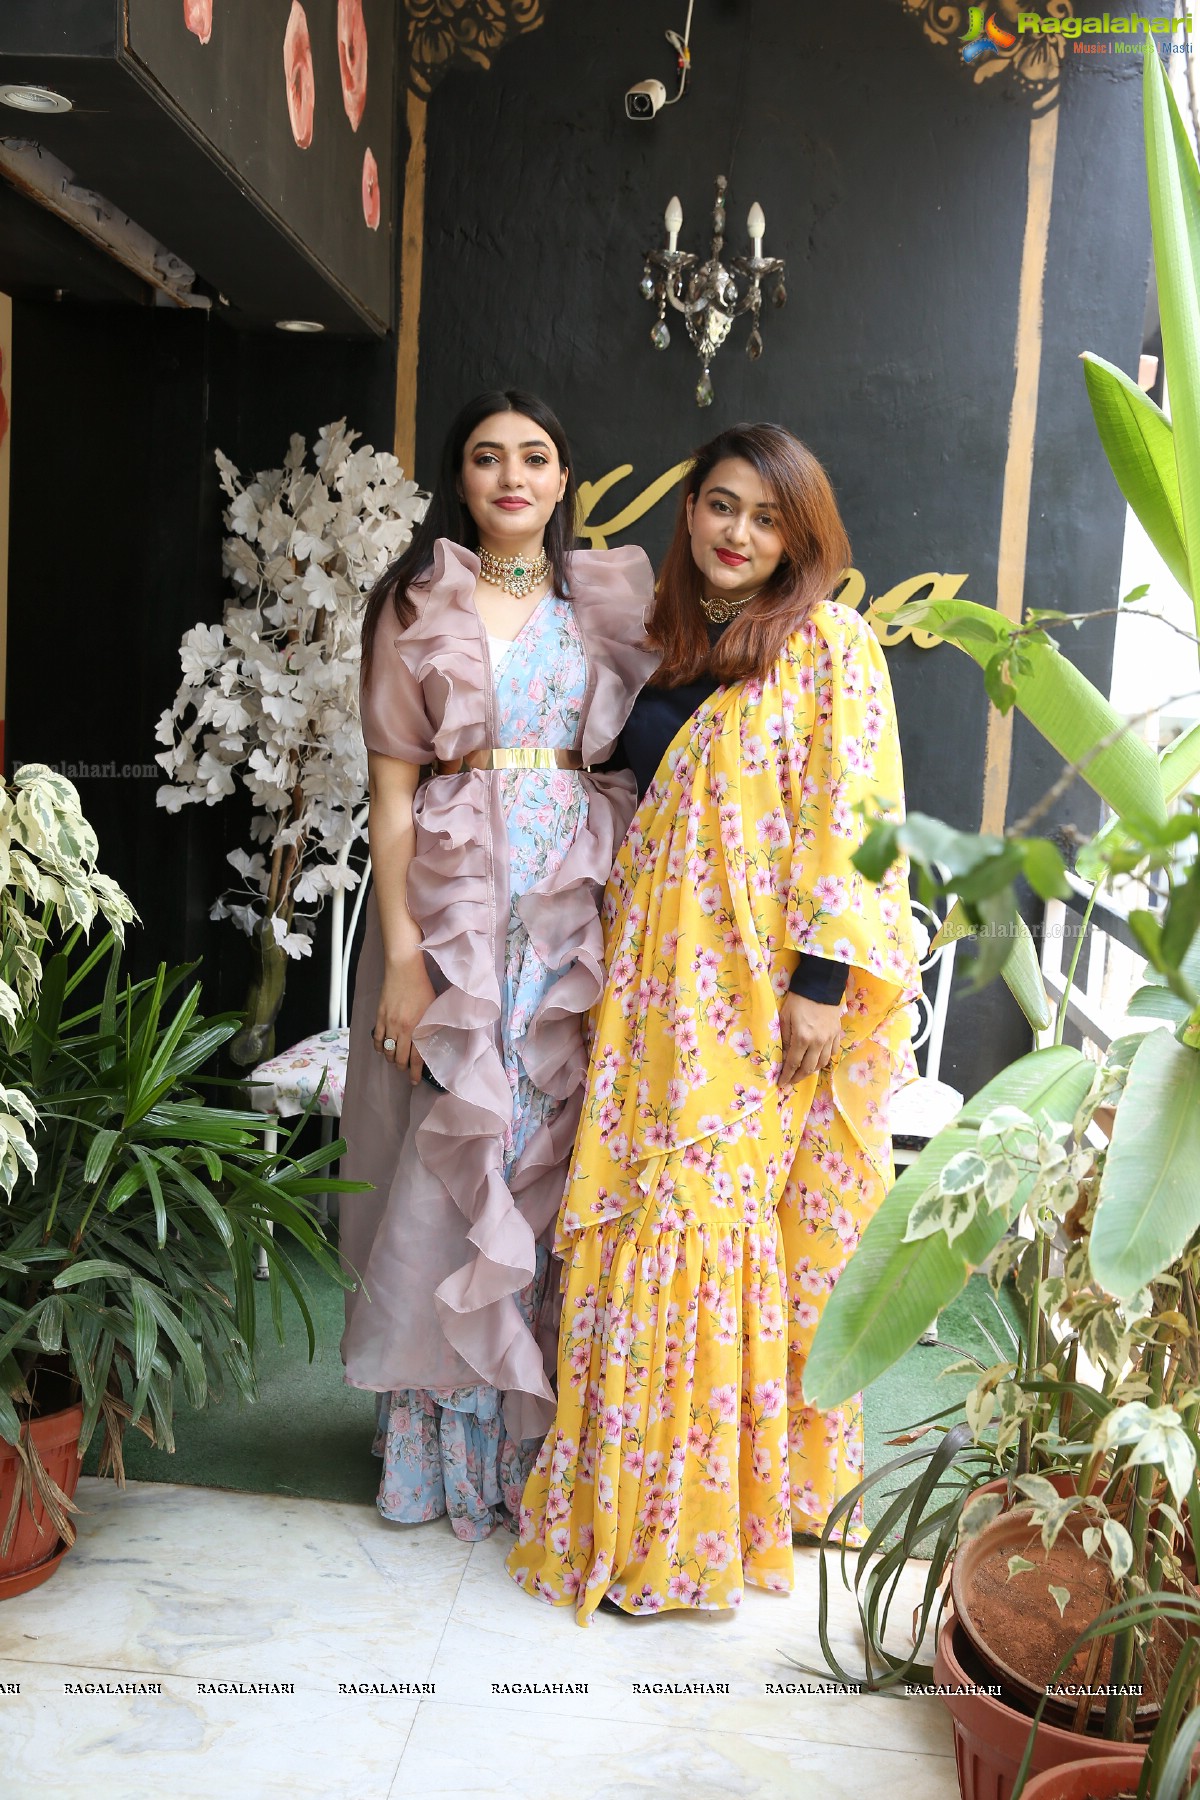 Krsna Couture Showcases Their Summer Line 'An Eternal Summer' at Vithaldas Chambers, Somajiguda